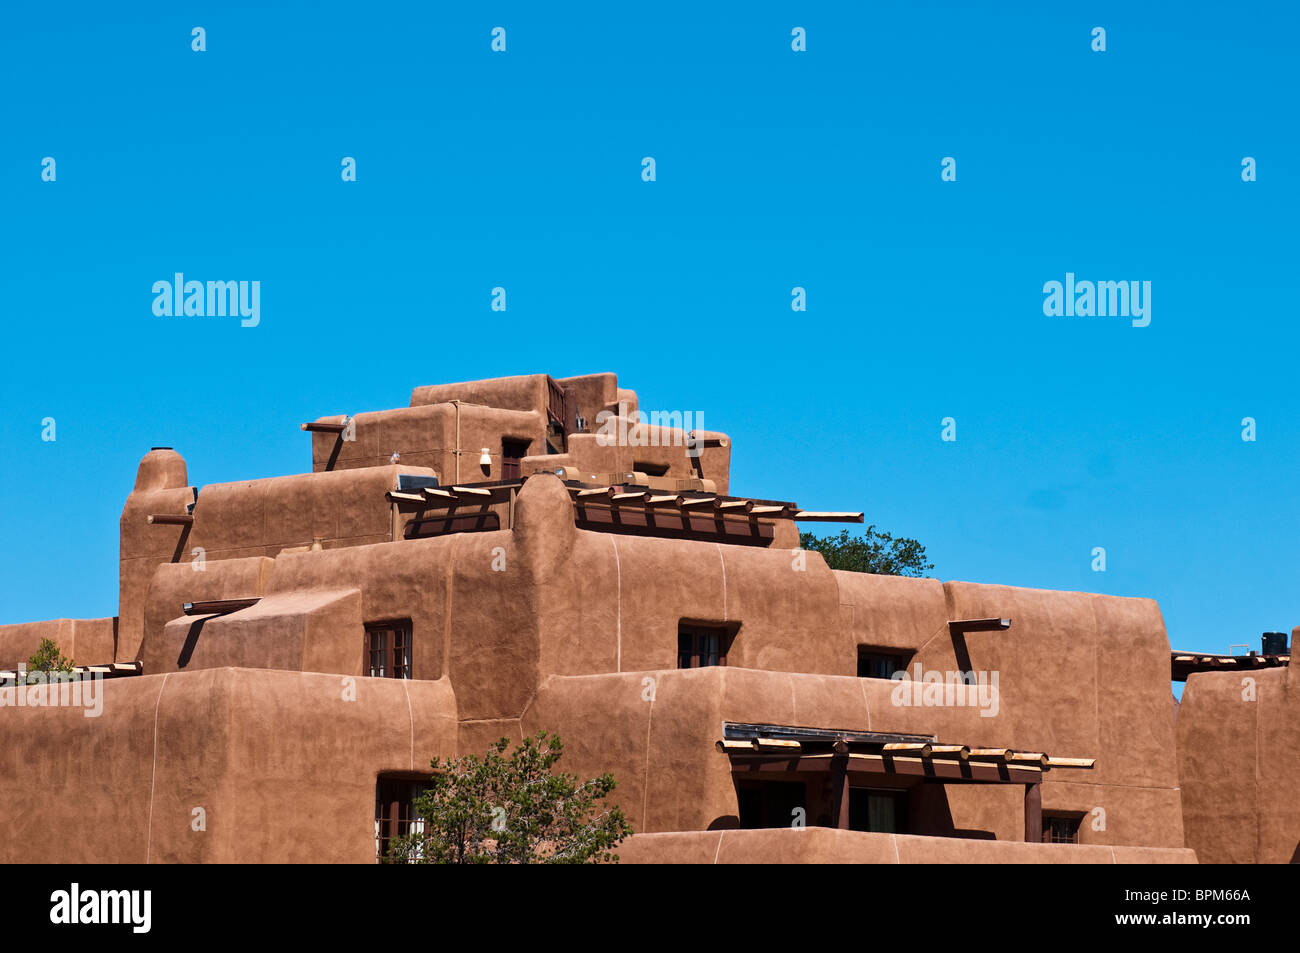 Adobe Building in Santa Fe New Mexico Stock Photo